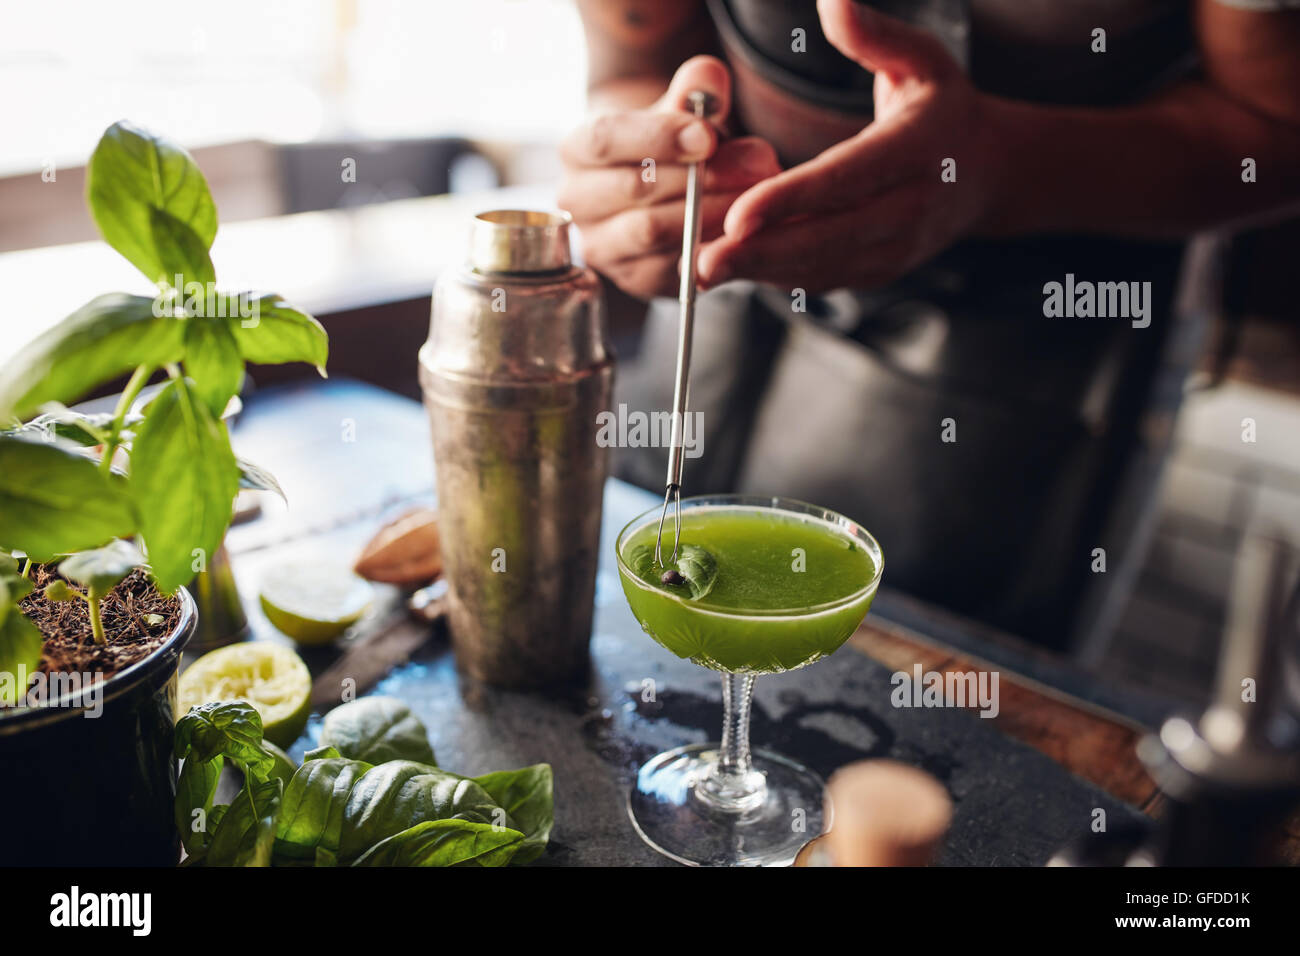 Close up shot of barman hands garnishing fresh basil smash cocktail at the counter Stock Photo